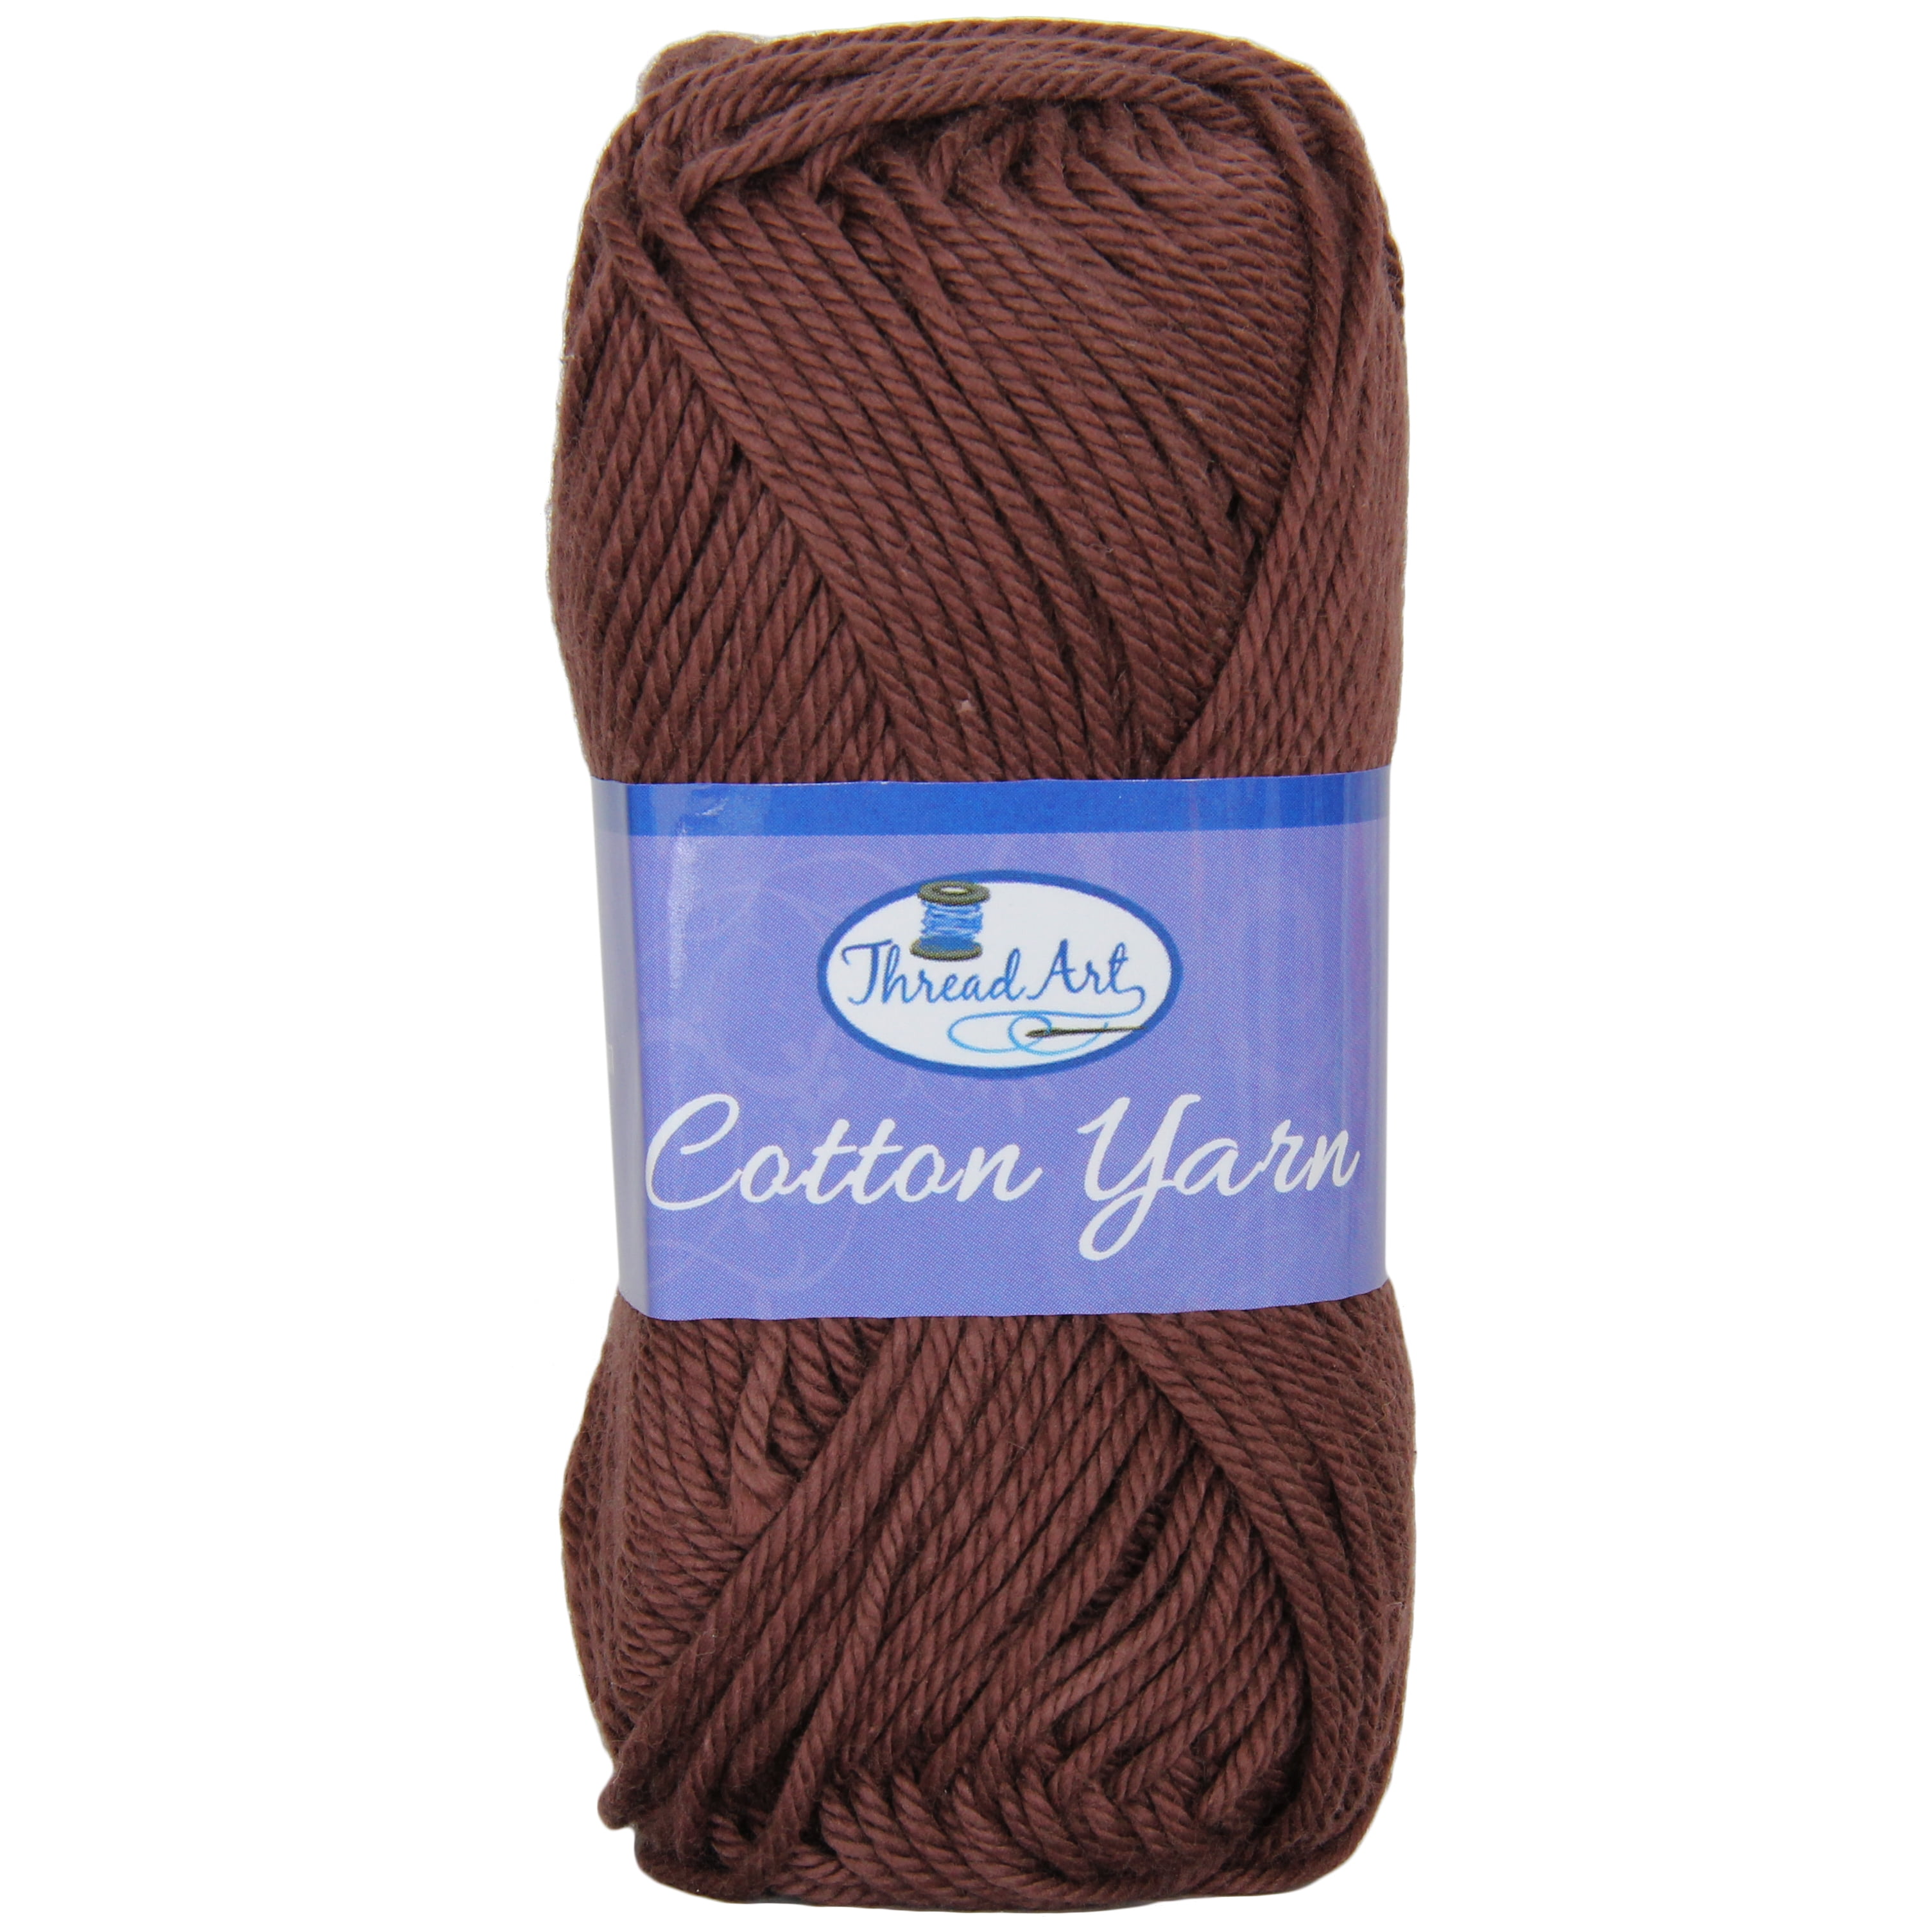 TEHAUX 2pcs Crochet Yarn Cotton Yarn for Dishcloths Crochet Thread Chunky  Cotton Yarn Crochet Wool Bulk Yarn Craft Yarn Acrylic Yarn Skeins Hand